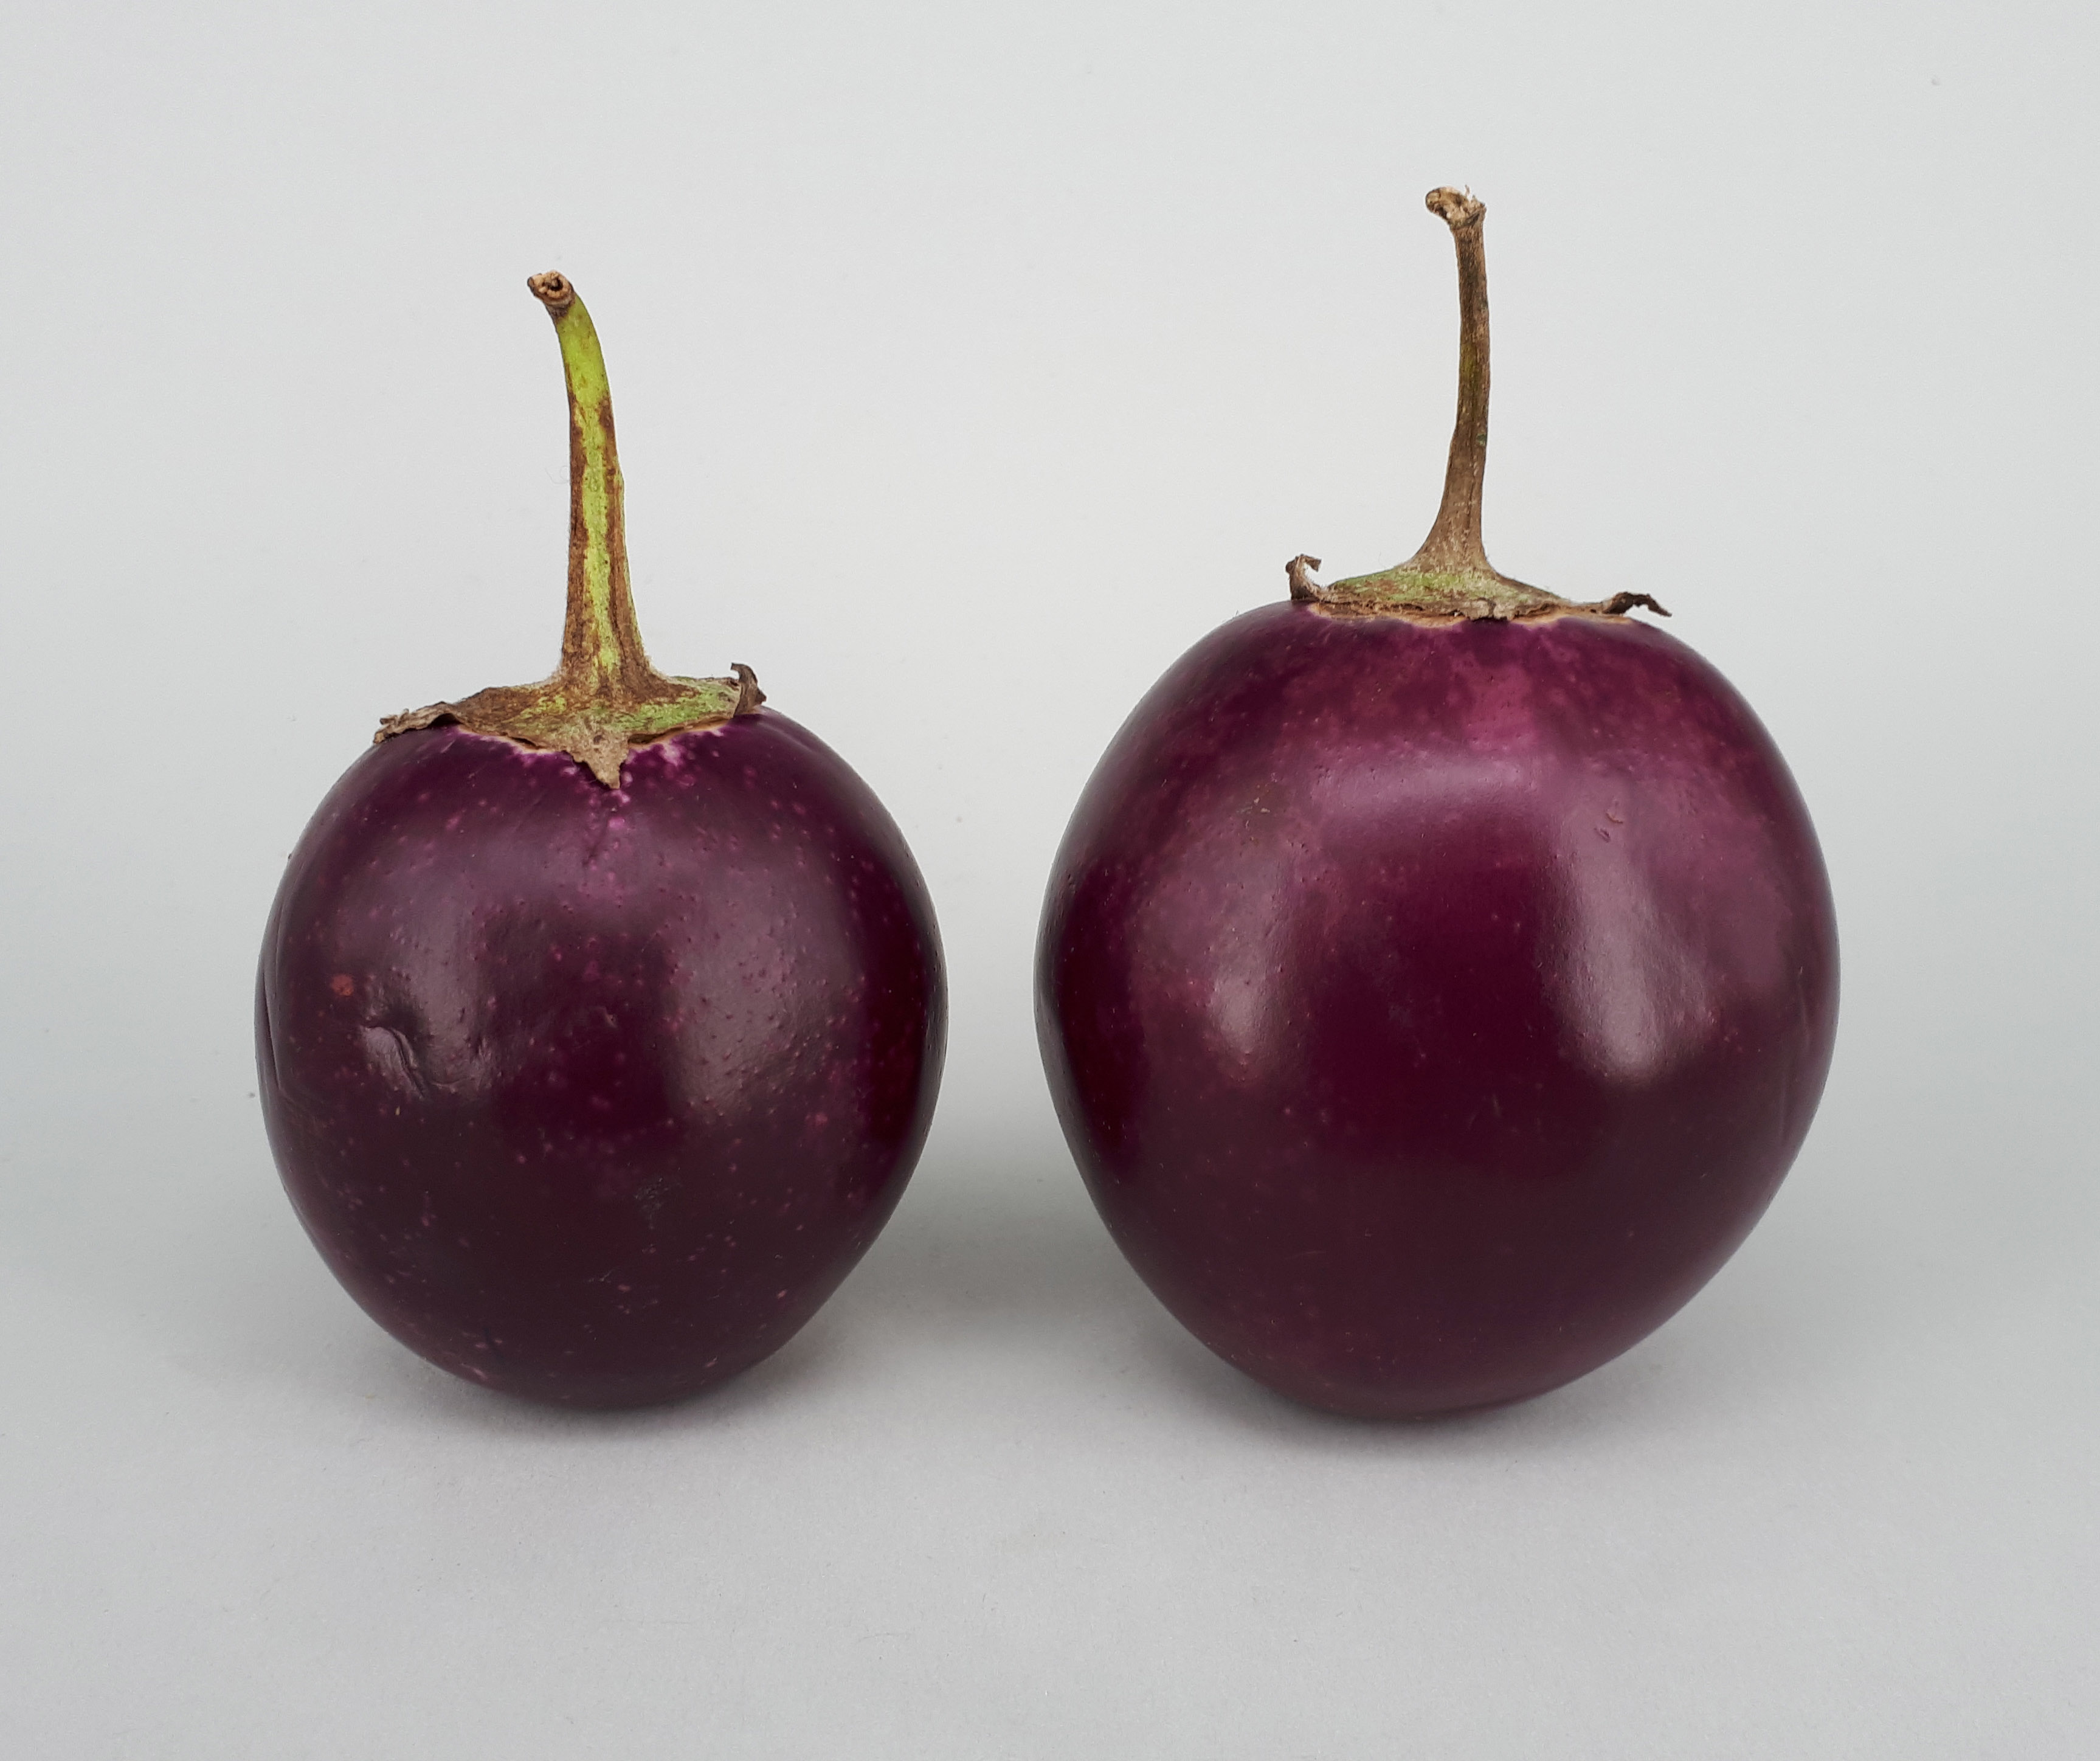 2 x Ratna eggplant 2017 A1